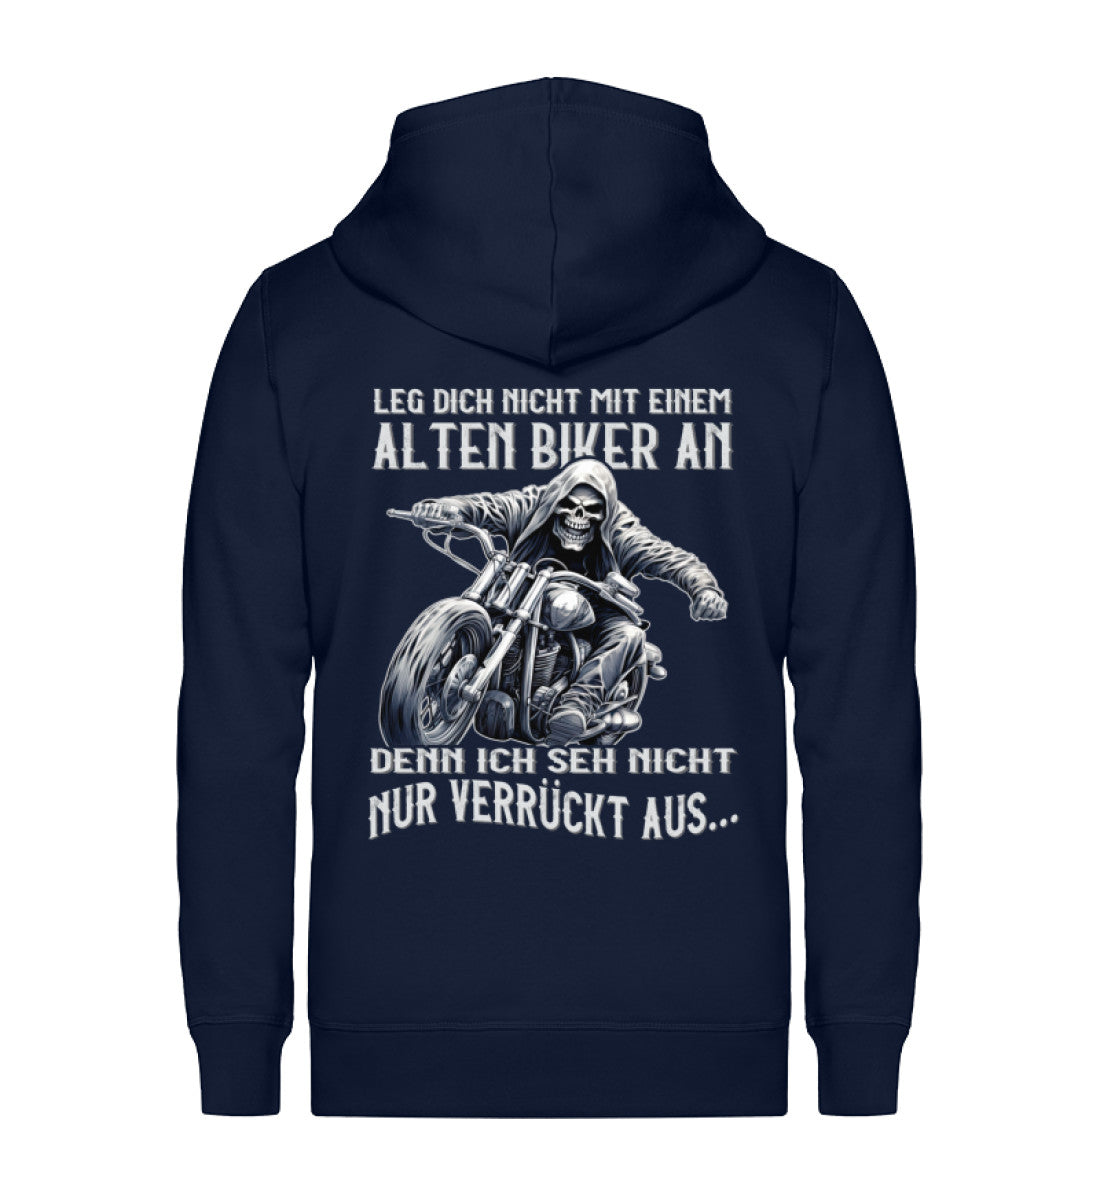 Eine Reißverschluss-Jacke für Motorradfahrer von Wingbikers mit dem Aufdruck, Leg dich nicht mit einem alten Biker an, denn ich seh nicht nur verrückt aus, in navy blau.